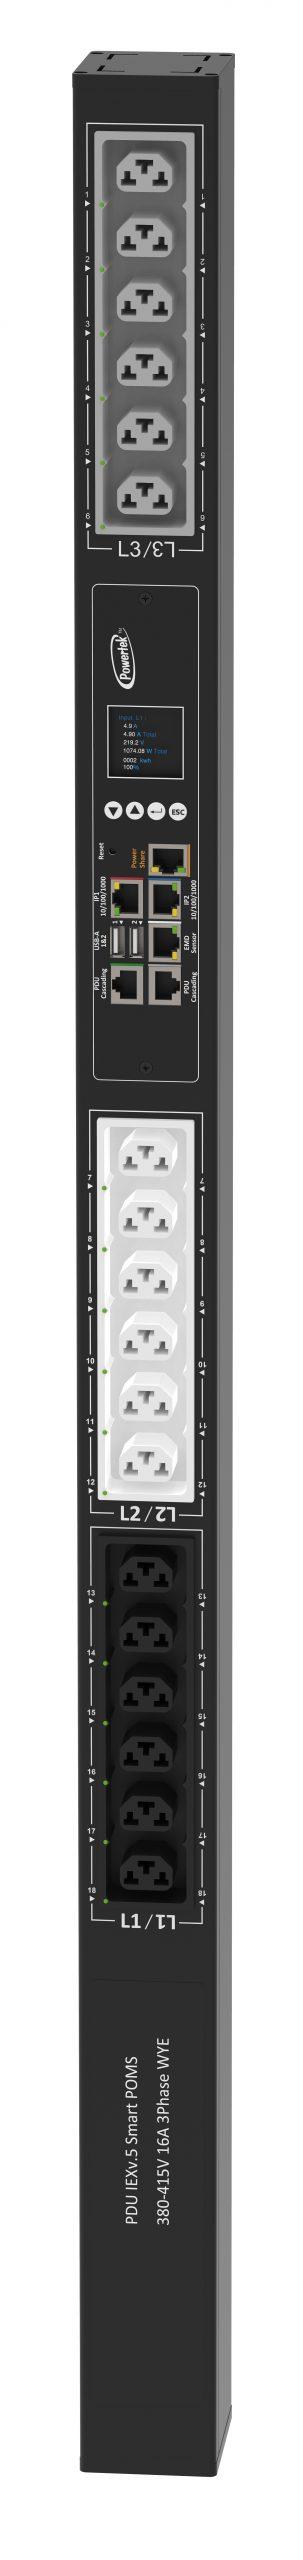 Powertek Intelligent PDU 380-415V, 3 fase, 16amp, låsning af power kabler C13/C19 kombination i samme udtag, 18 udtag redundant netværks mulighed, OLED display, overvågning af  sikringer